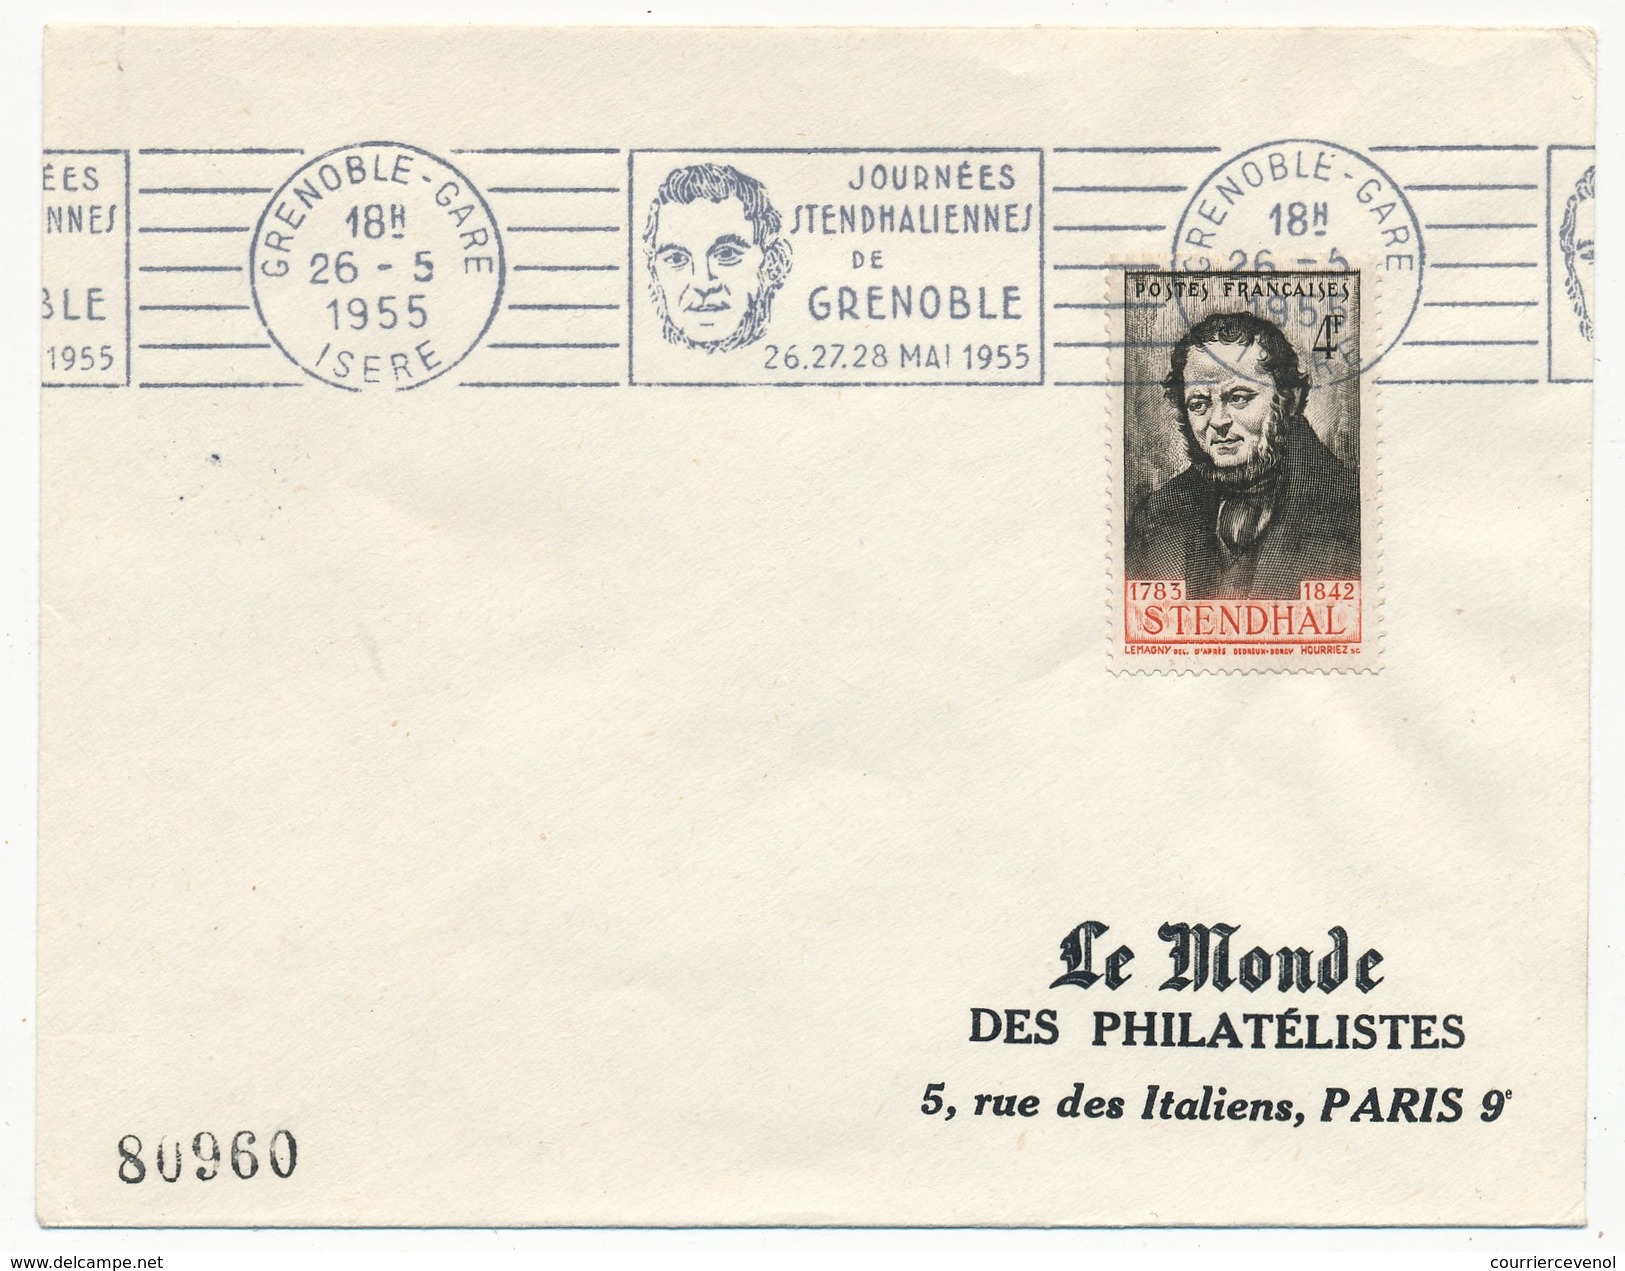 FRANCE - Enveloppe - OMEC "Journées Stendhaliennes" GRENOBLE 26 Mai 1955 - Writers